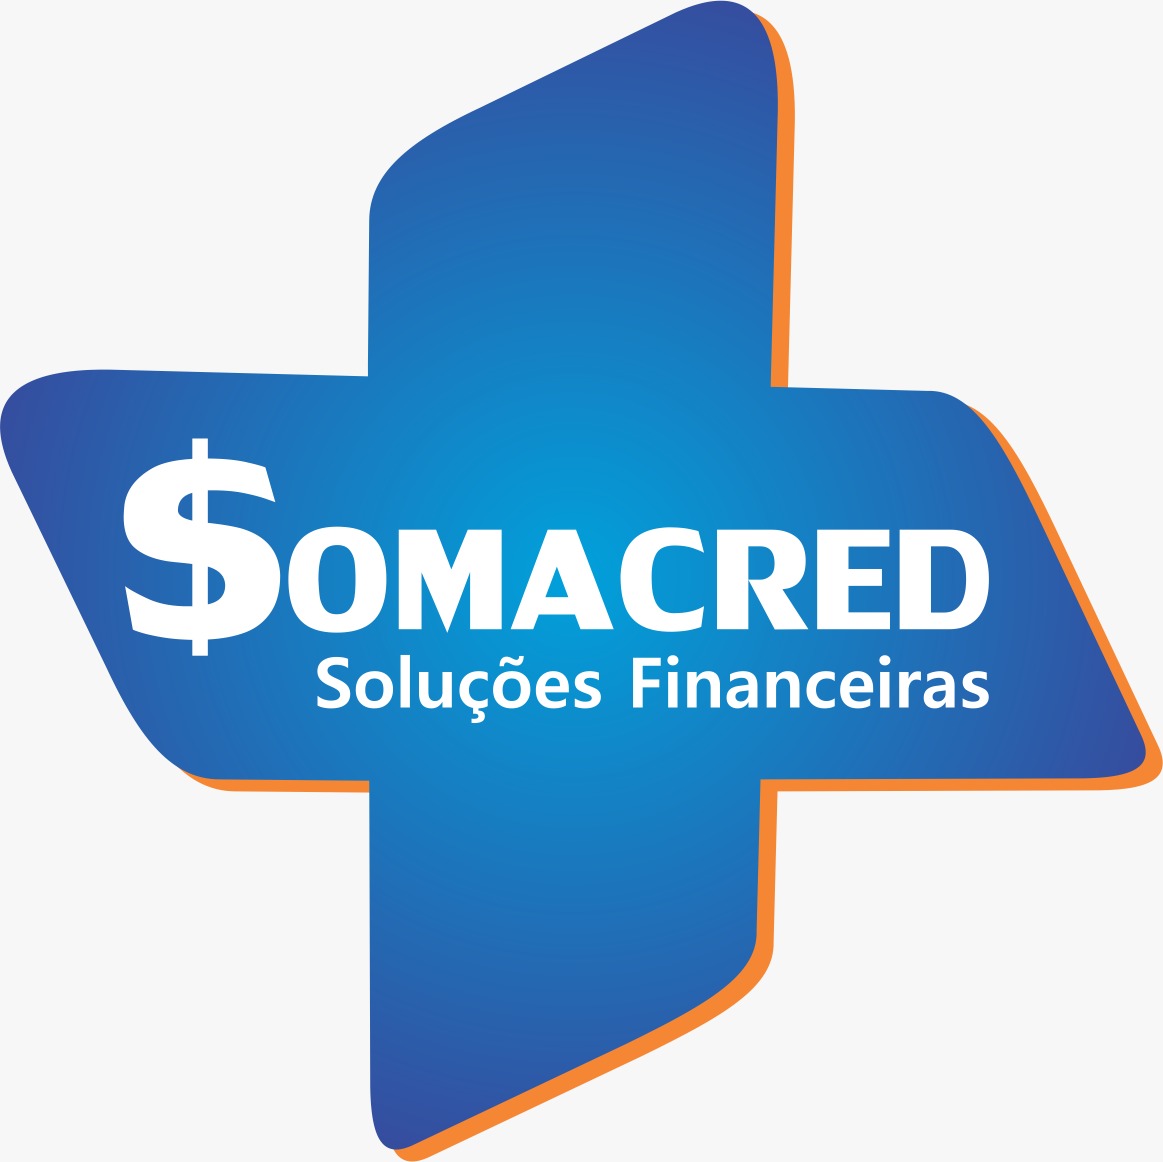 Logotipo do parceiro Target &#8211; Somacred Soluções Financeiras &#8211; 5%